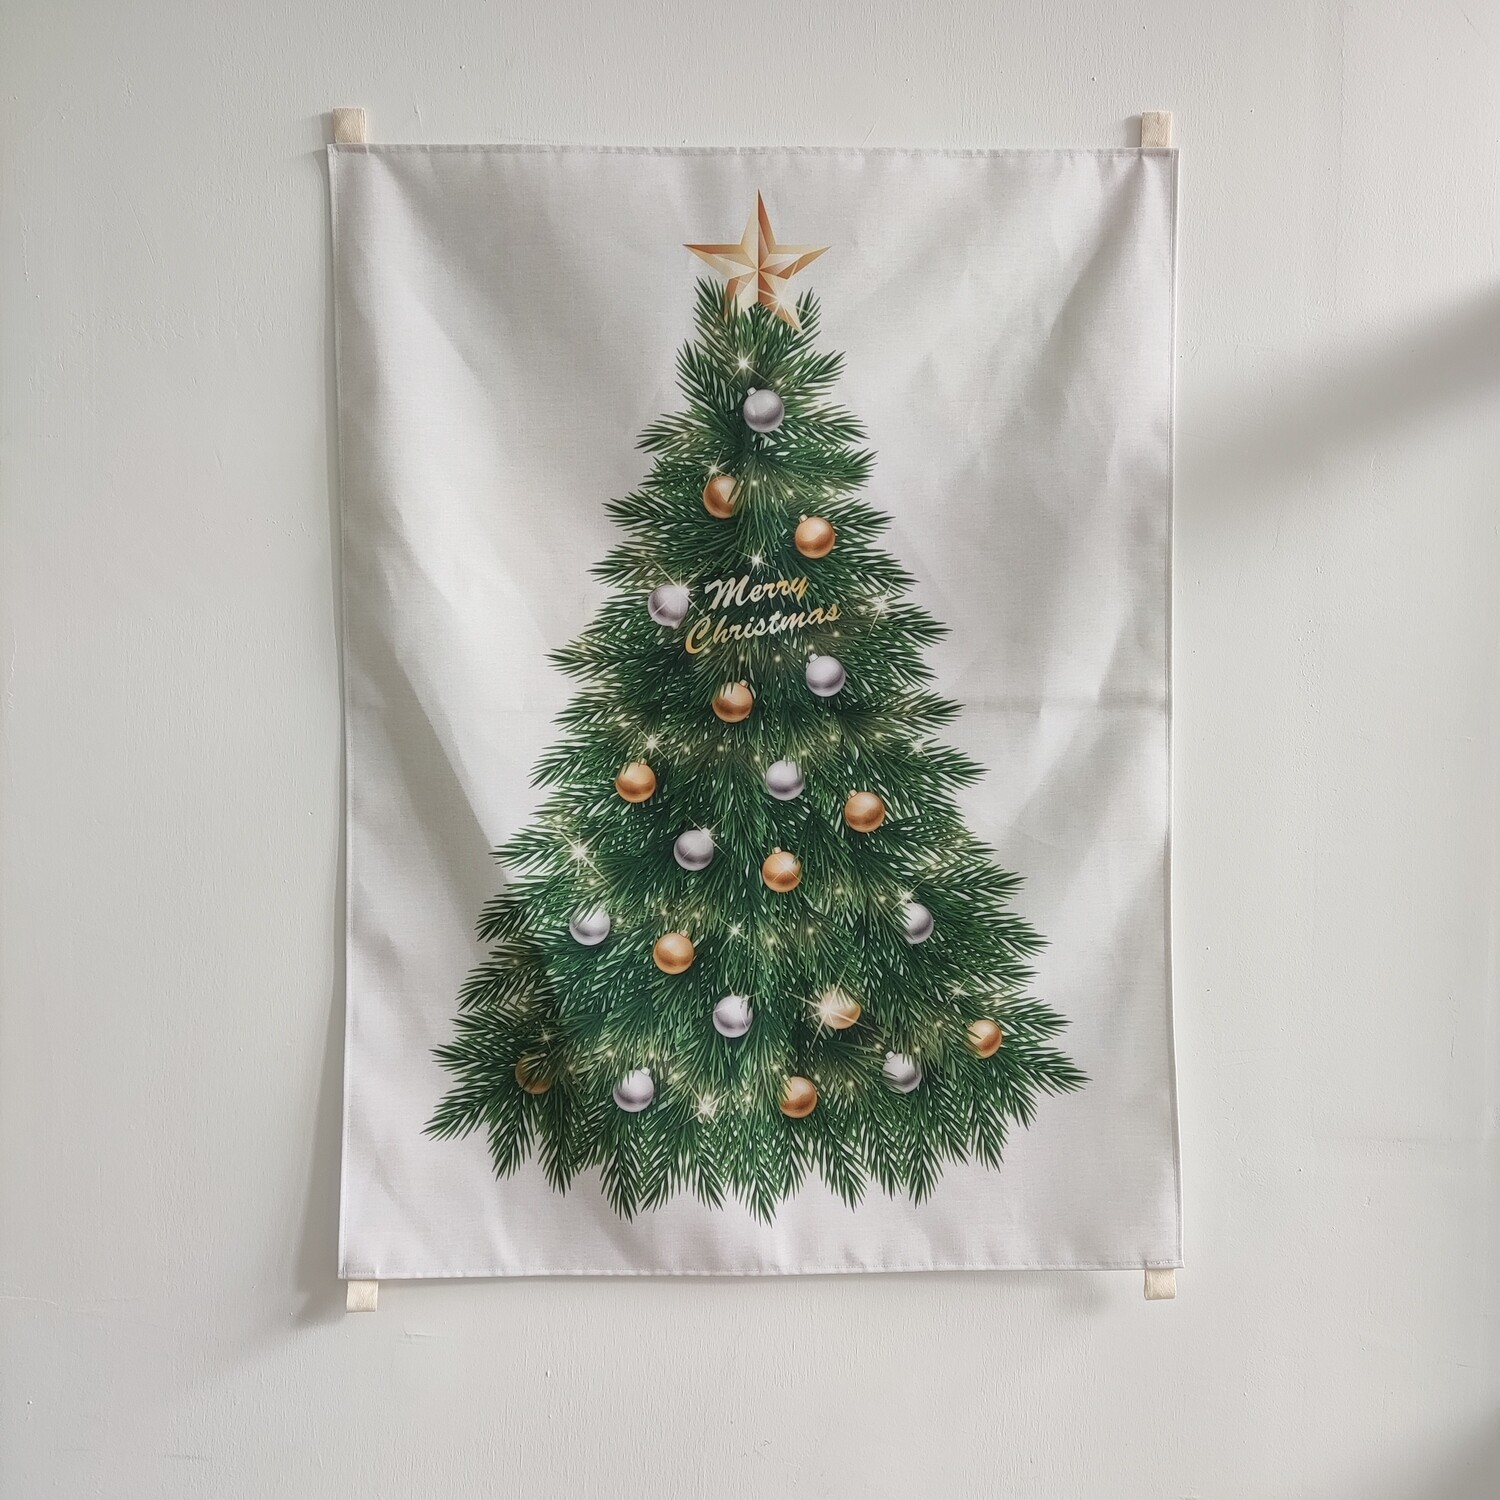 現貨 聖誕樹掛幔 布幔 聖誕裝飾(金銀吊球款) Christmas Tree Tapestry